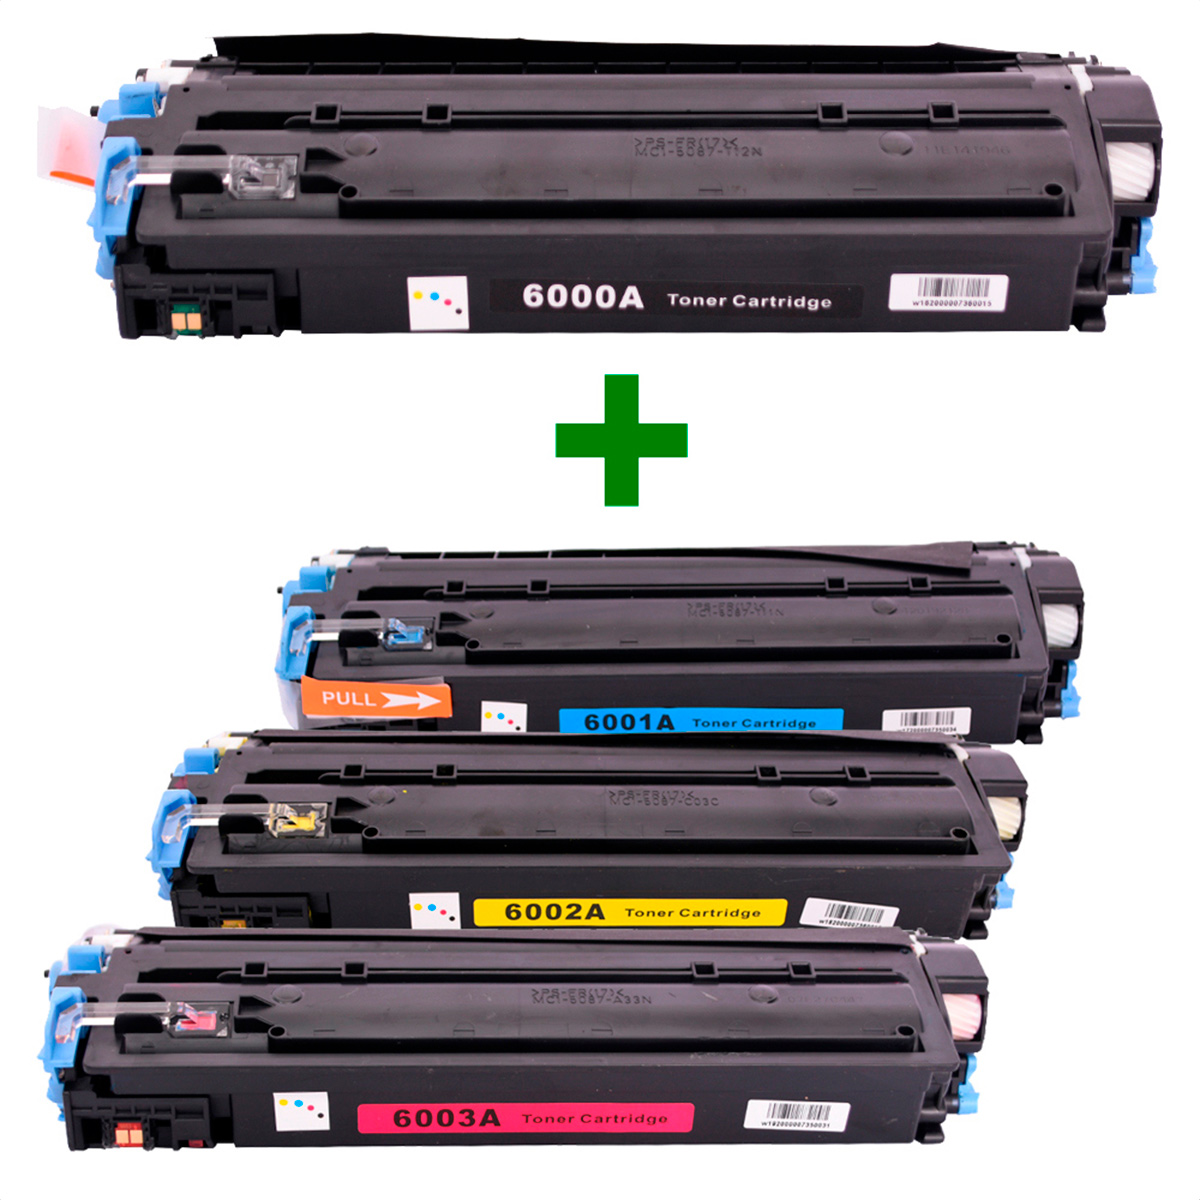 Kit Toner Q6000A/1/2/3 Compatível 2600 CM1015 2600N Preto e Coloridos até 2,5k páginas